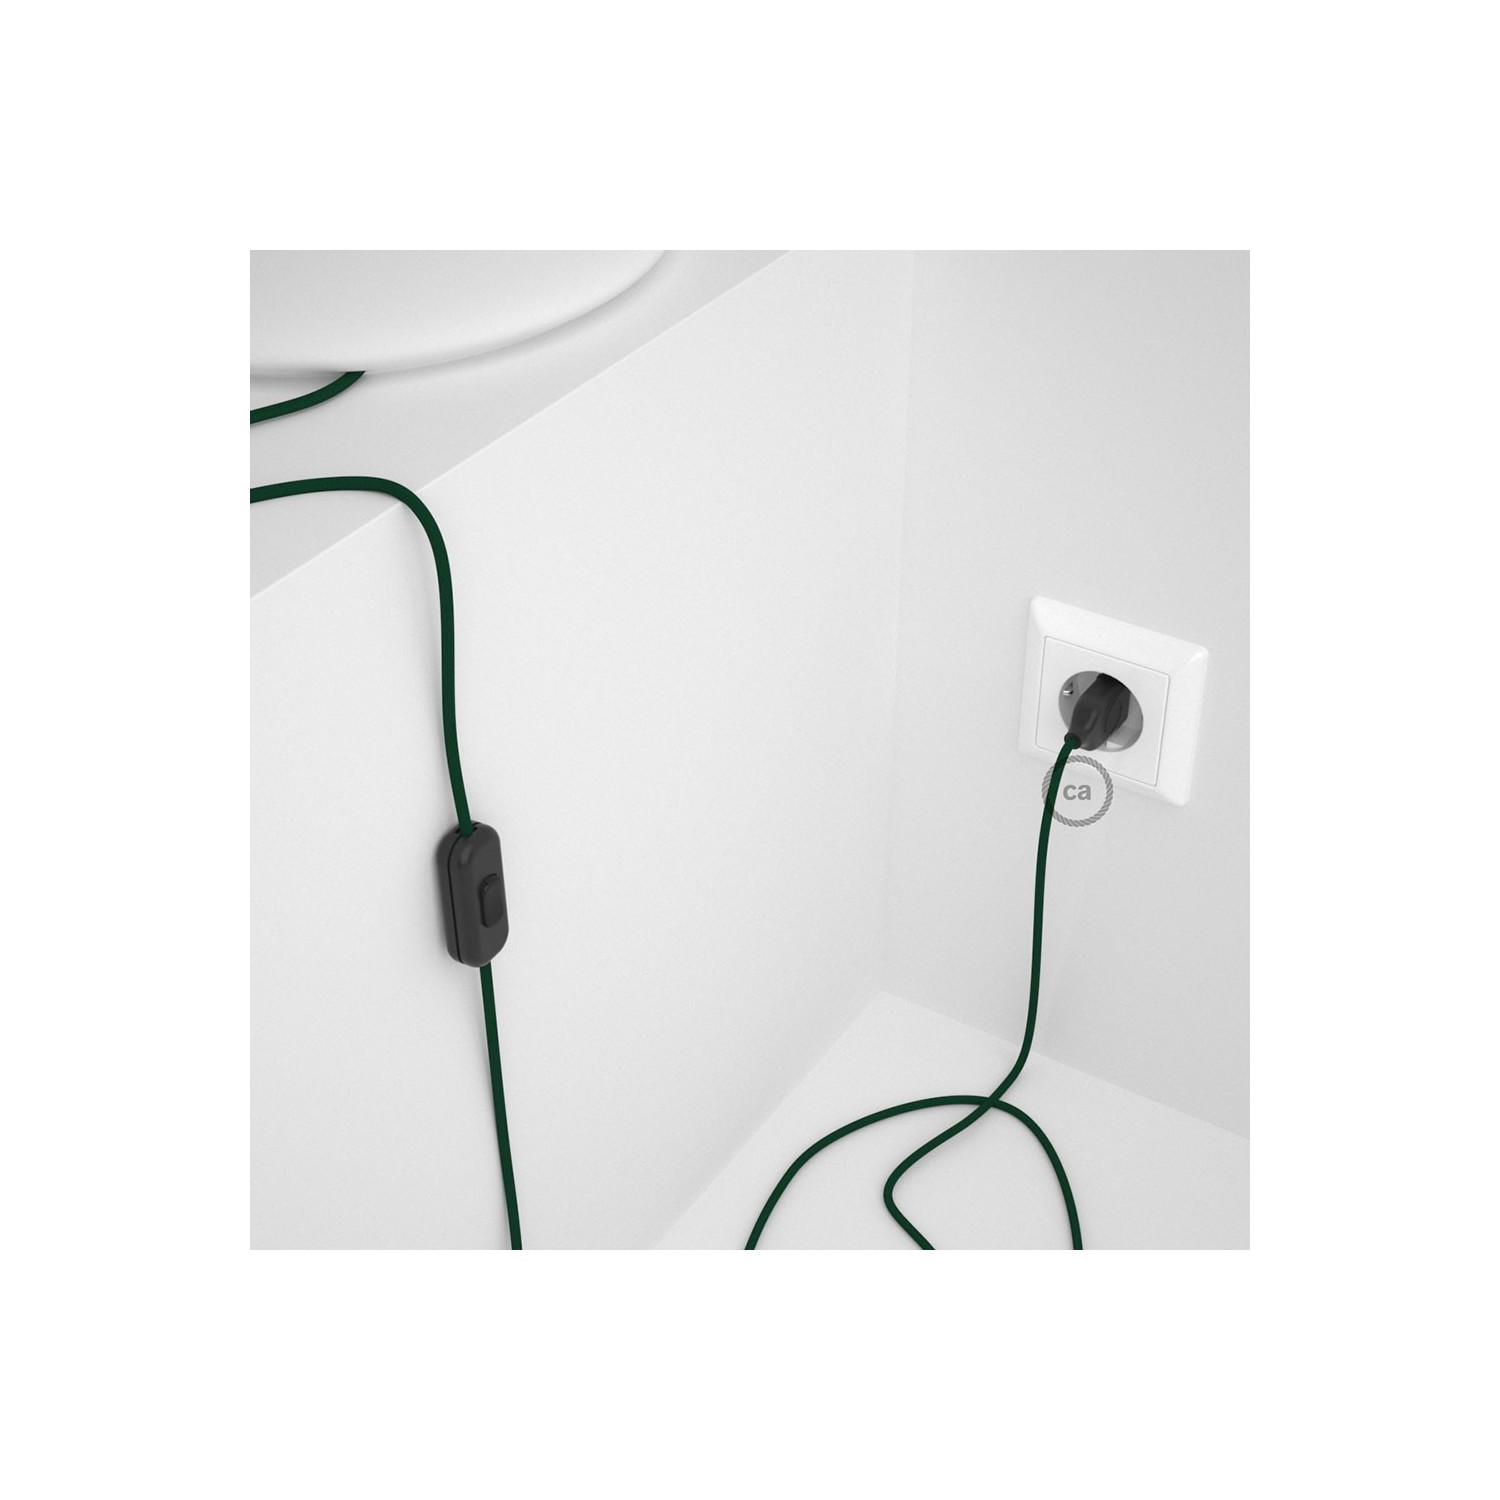 Cableado para lámpara de mesa, cable RM21 Rayón Verde Oscuro 1,8 m. Elige el color de la clavija y del interruptor!